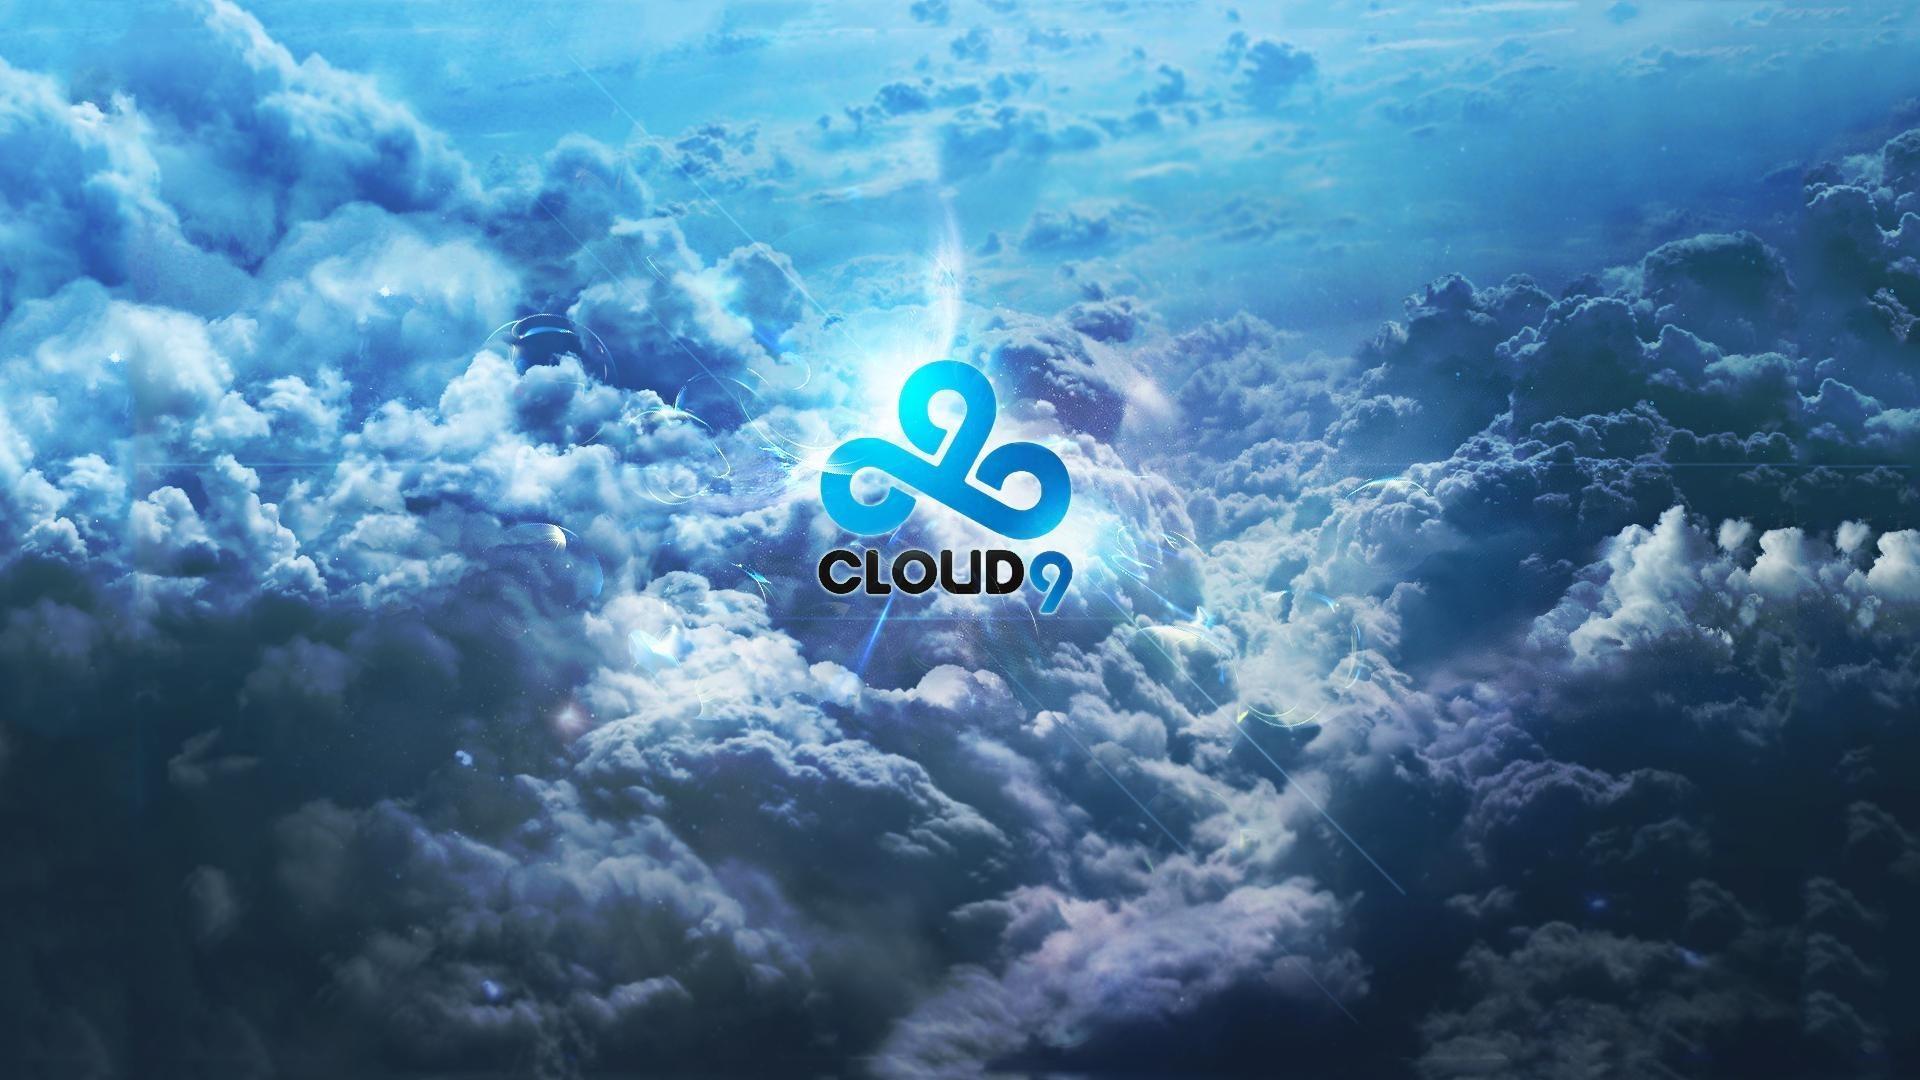 Cloud 9 Phone Wallpaper